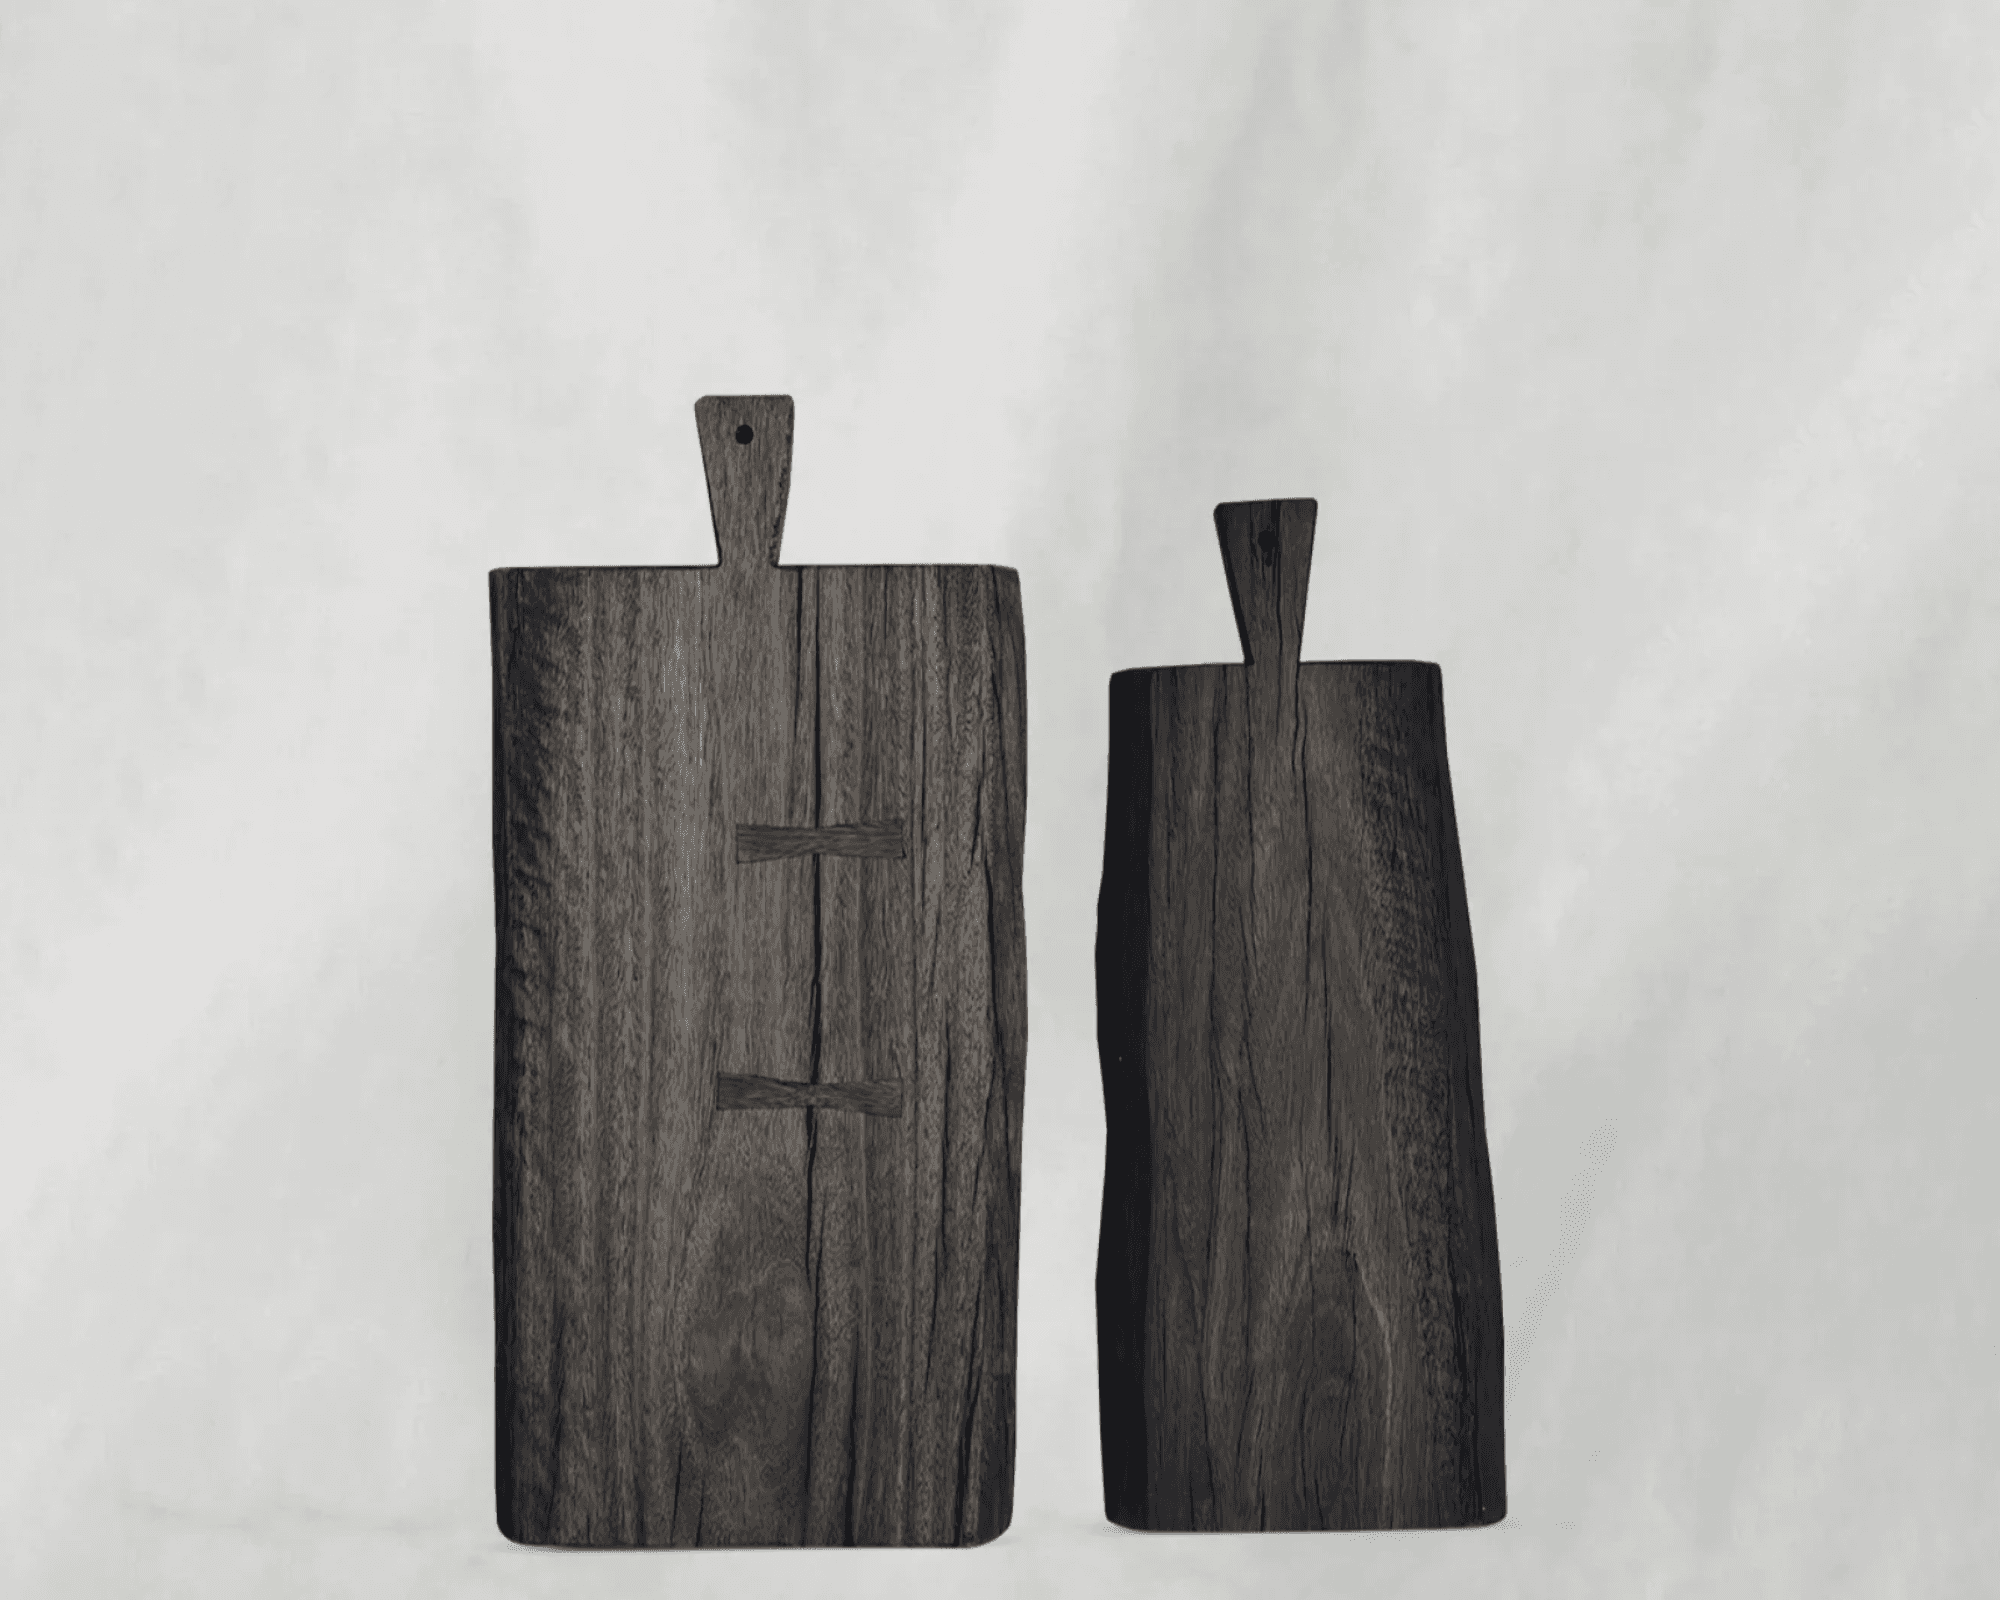 Wooden Chopping Board  Konga Online Shopping